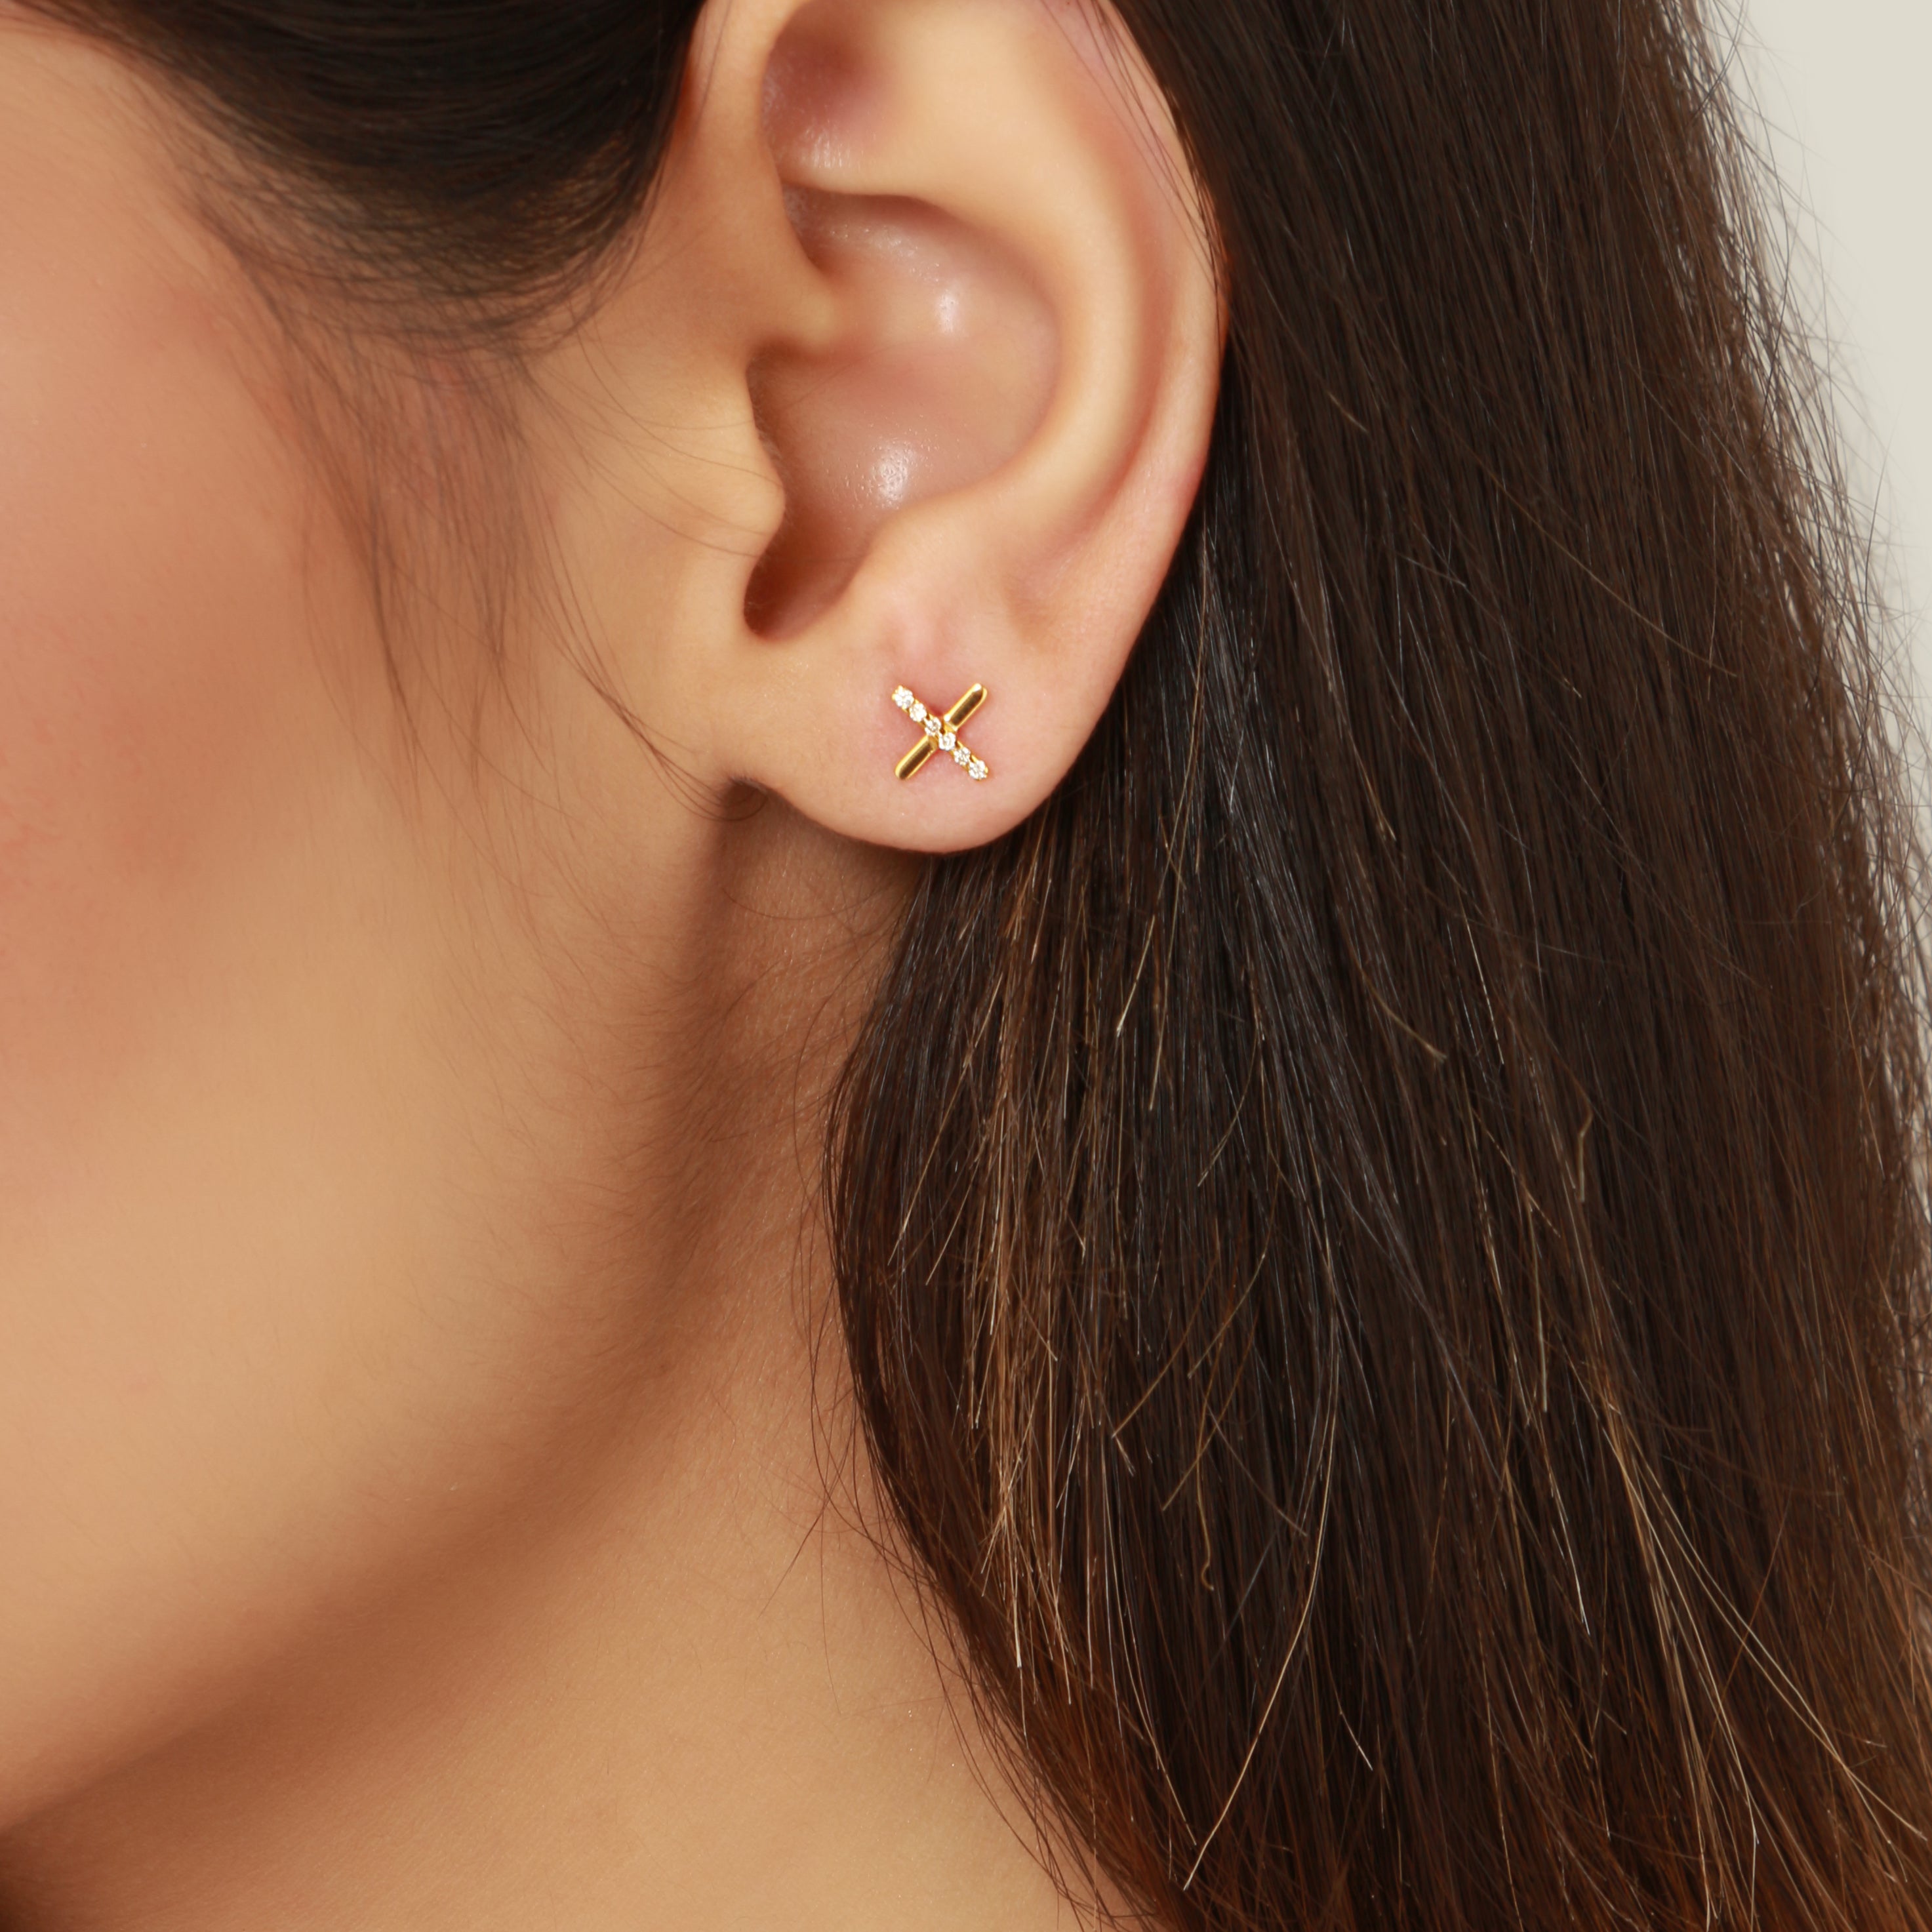 Tiny Butterfly Stud Earrings in Gold | Lisa Angel